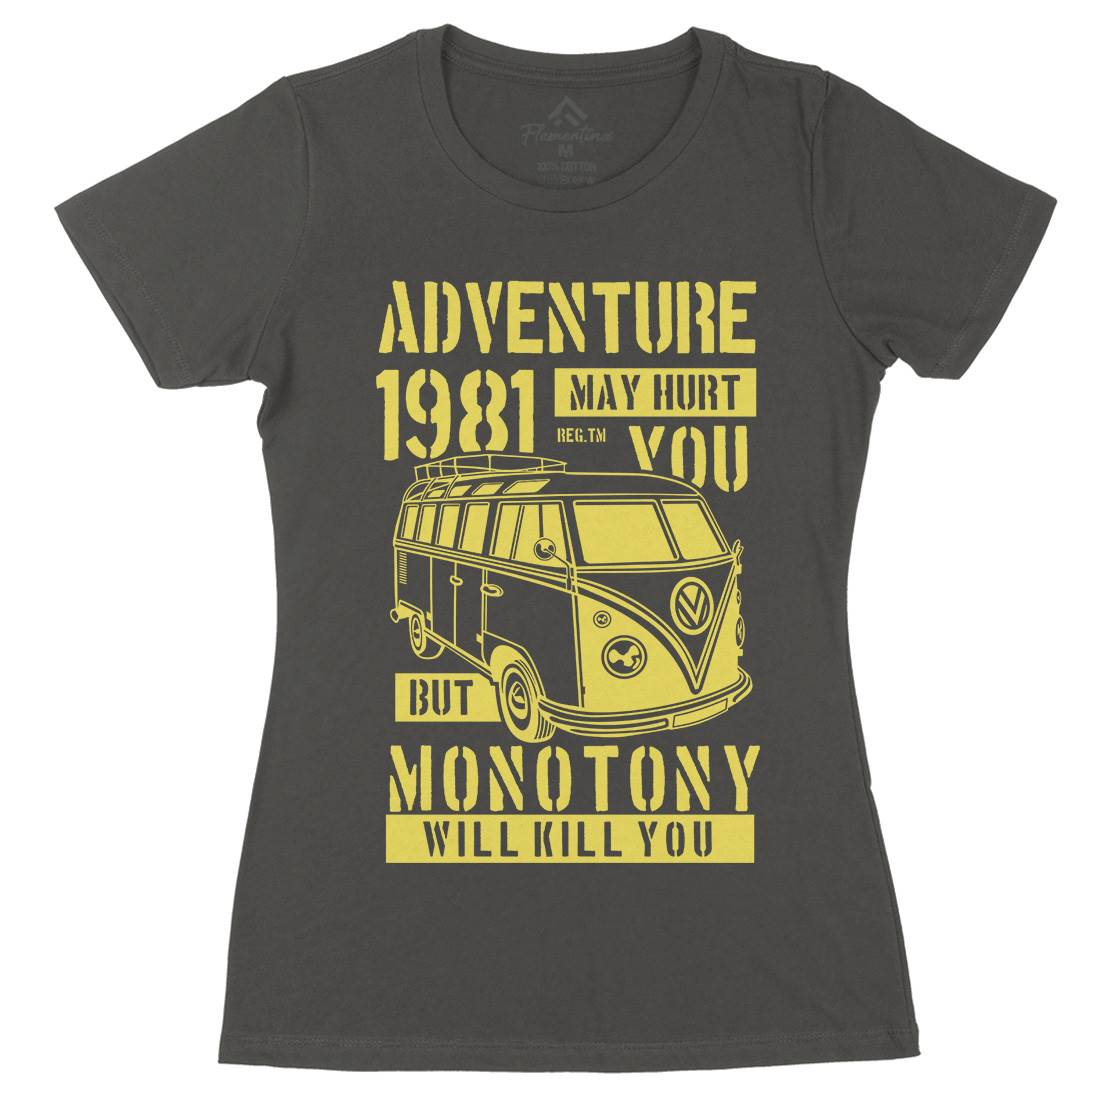 Adventure May Hurt You Womens Organic Crew Neck T-Shirt Nature B175